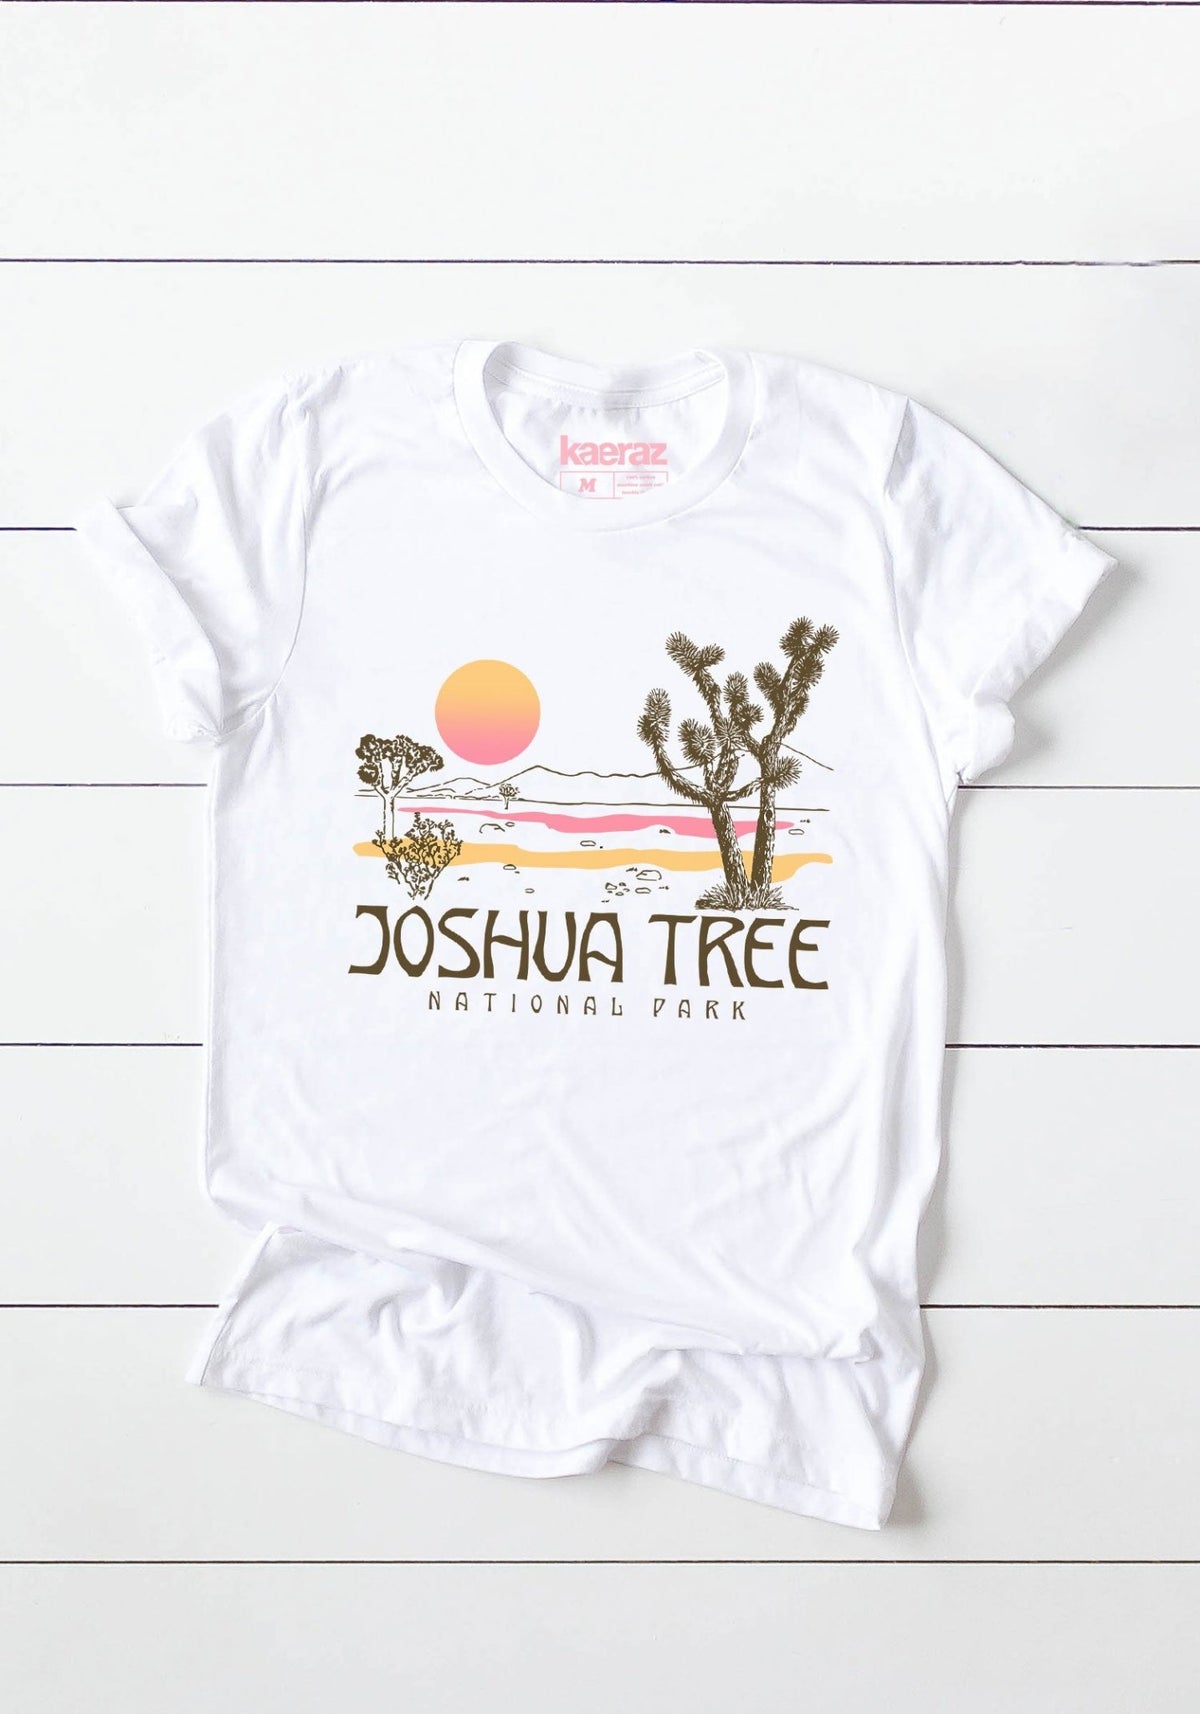 Joshua Tree Tee by kaeraz 70s shirt 70s style california